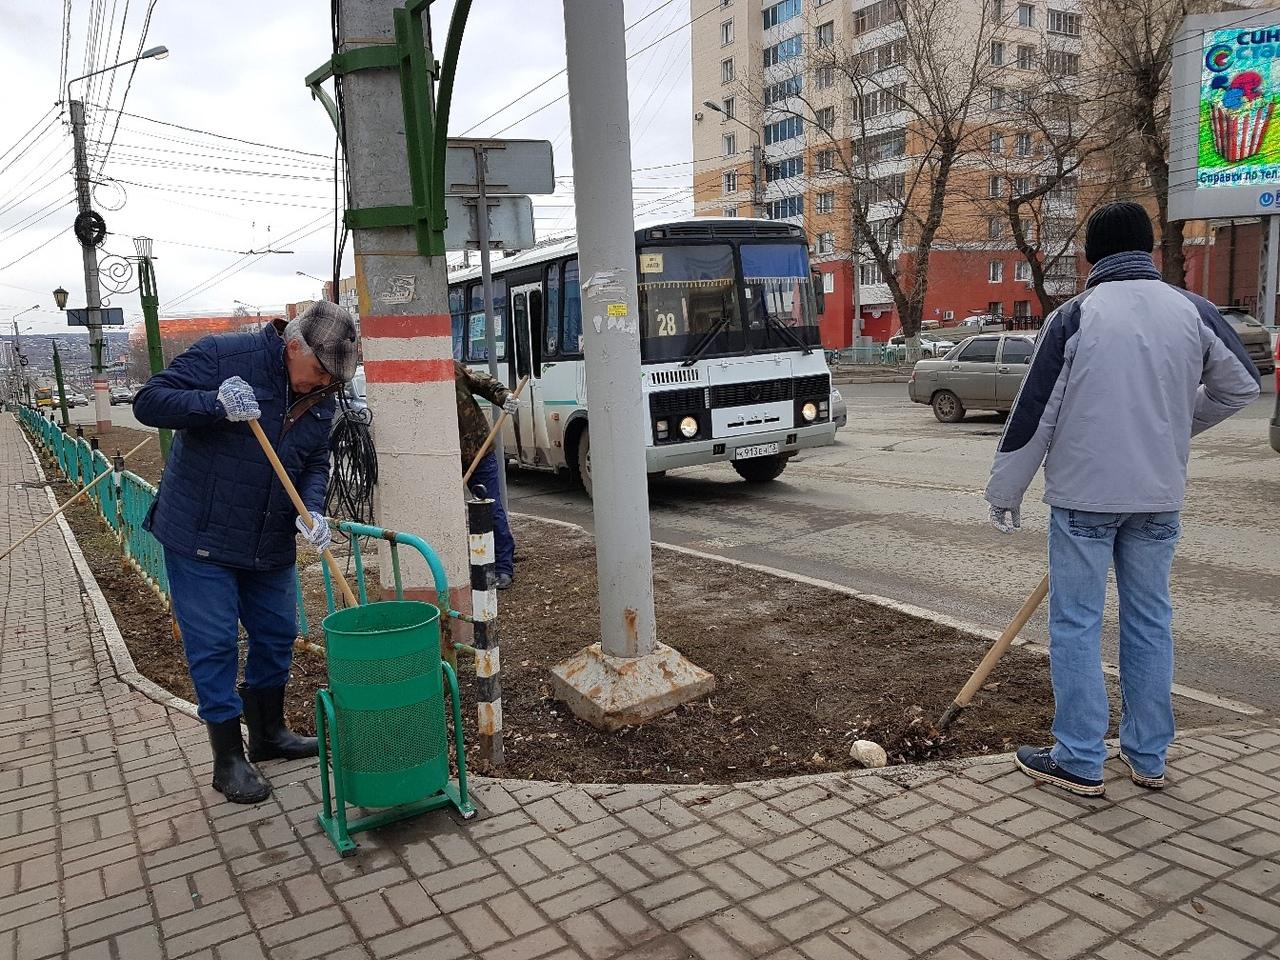 Мэр Саранска вышел убирать городские улицы